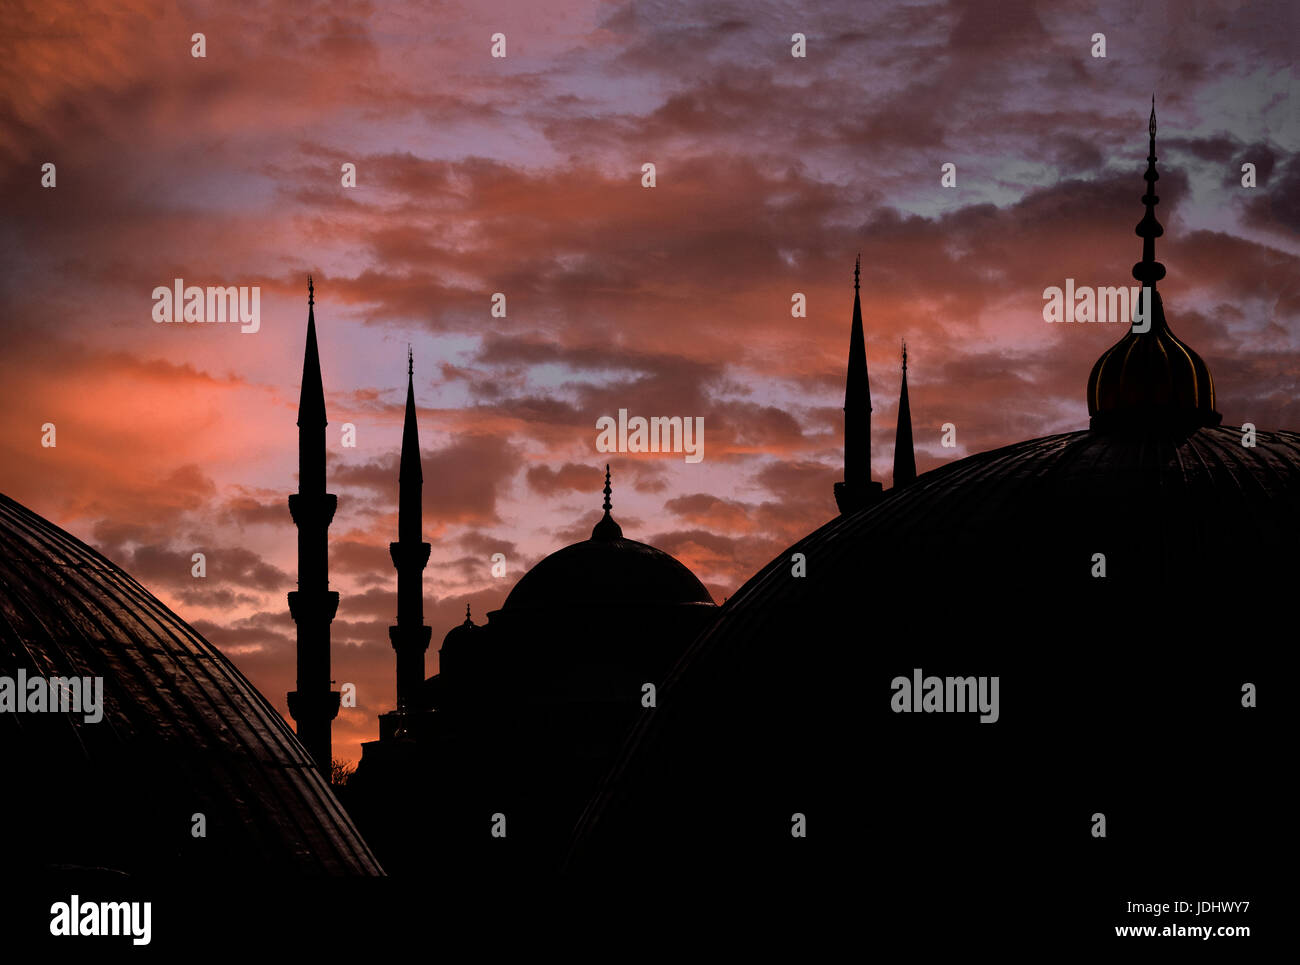 Späten Nachmittag Himmel und Sultanahmet Moschee Silhouette von Hagia Sophia Istanbul Türkei gesehen Stockfoto